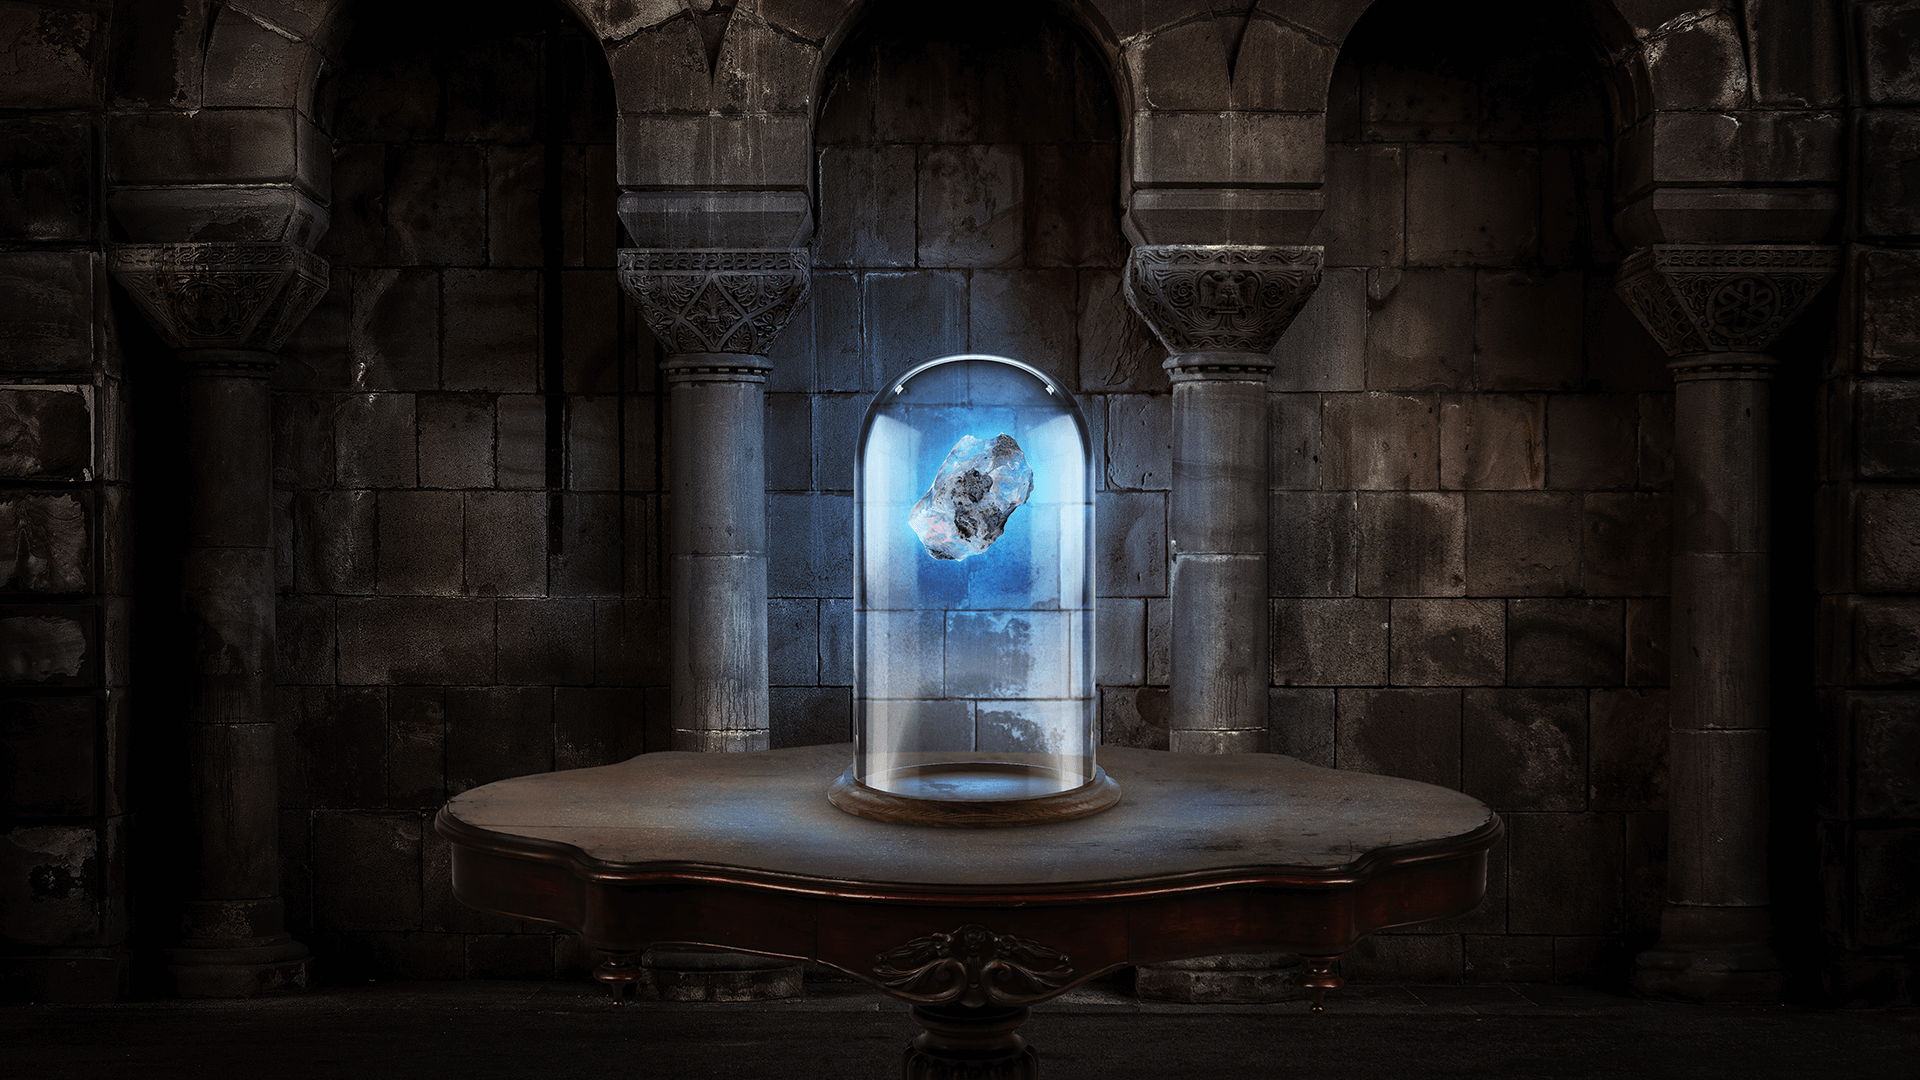 Numa sala com paredes antigas, uma mesa sustenta uma redoma cilíndrica onde, dentro, há uma pedra azul brilhante.